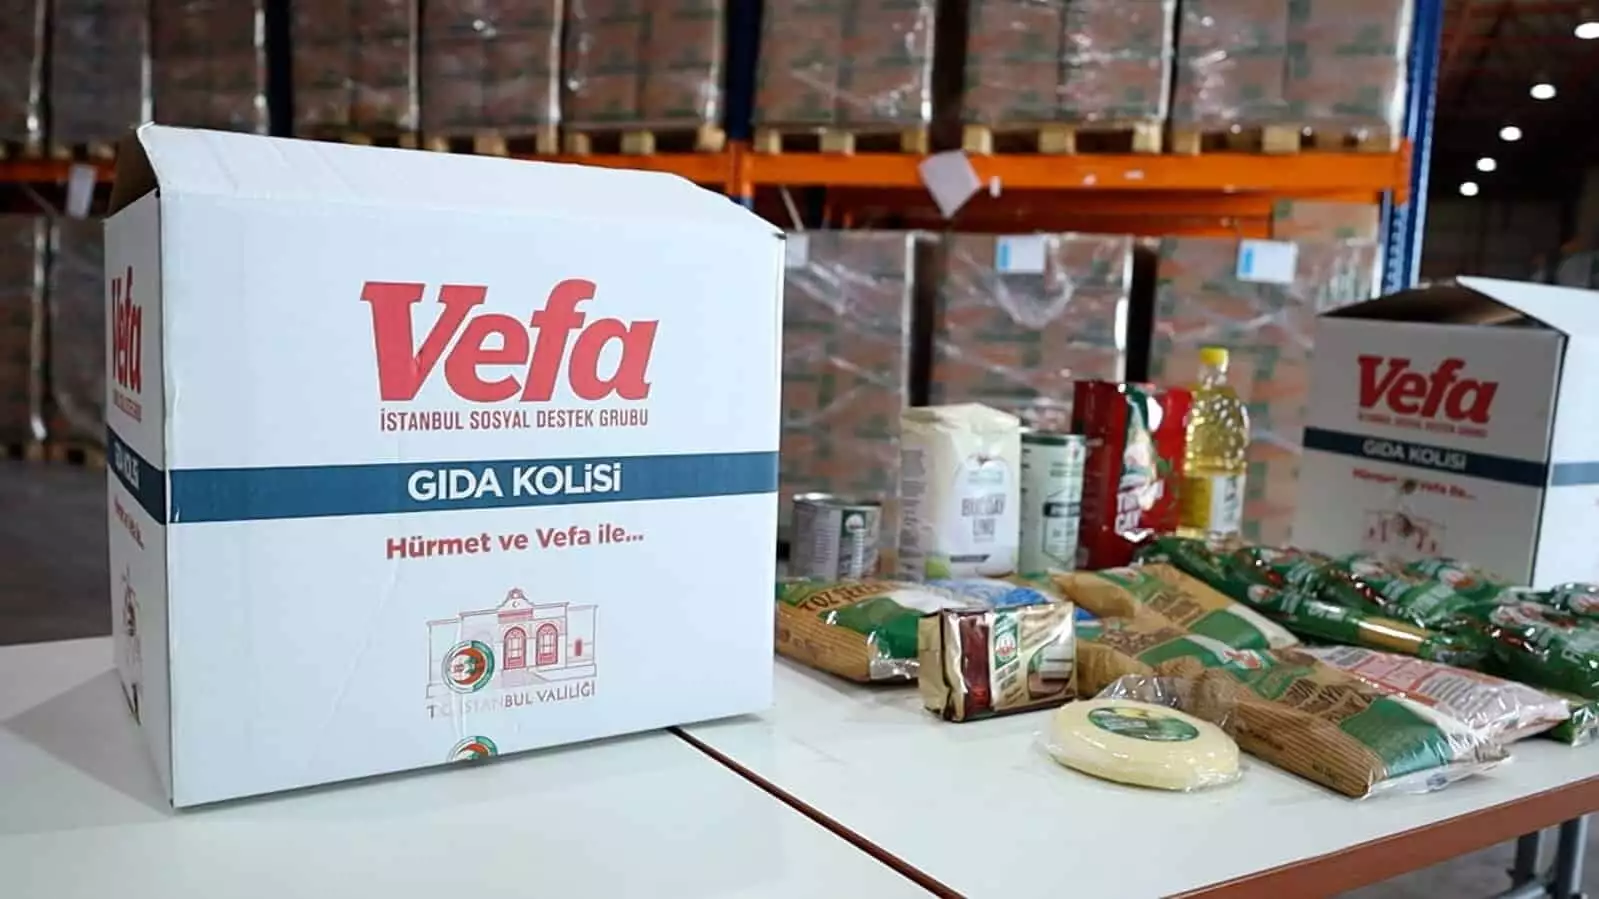 İstanbul valisi ali yerlikaya, vefa sosyal destek çalışmaları kapsamında hazırlanan 150 bin gıda kolisi dağıtımı için iki aileyi ziyaret etti.